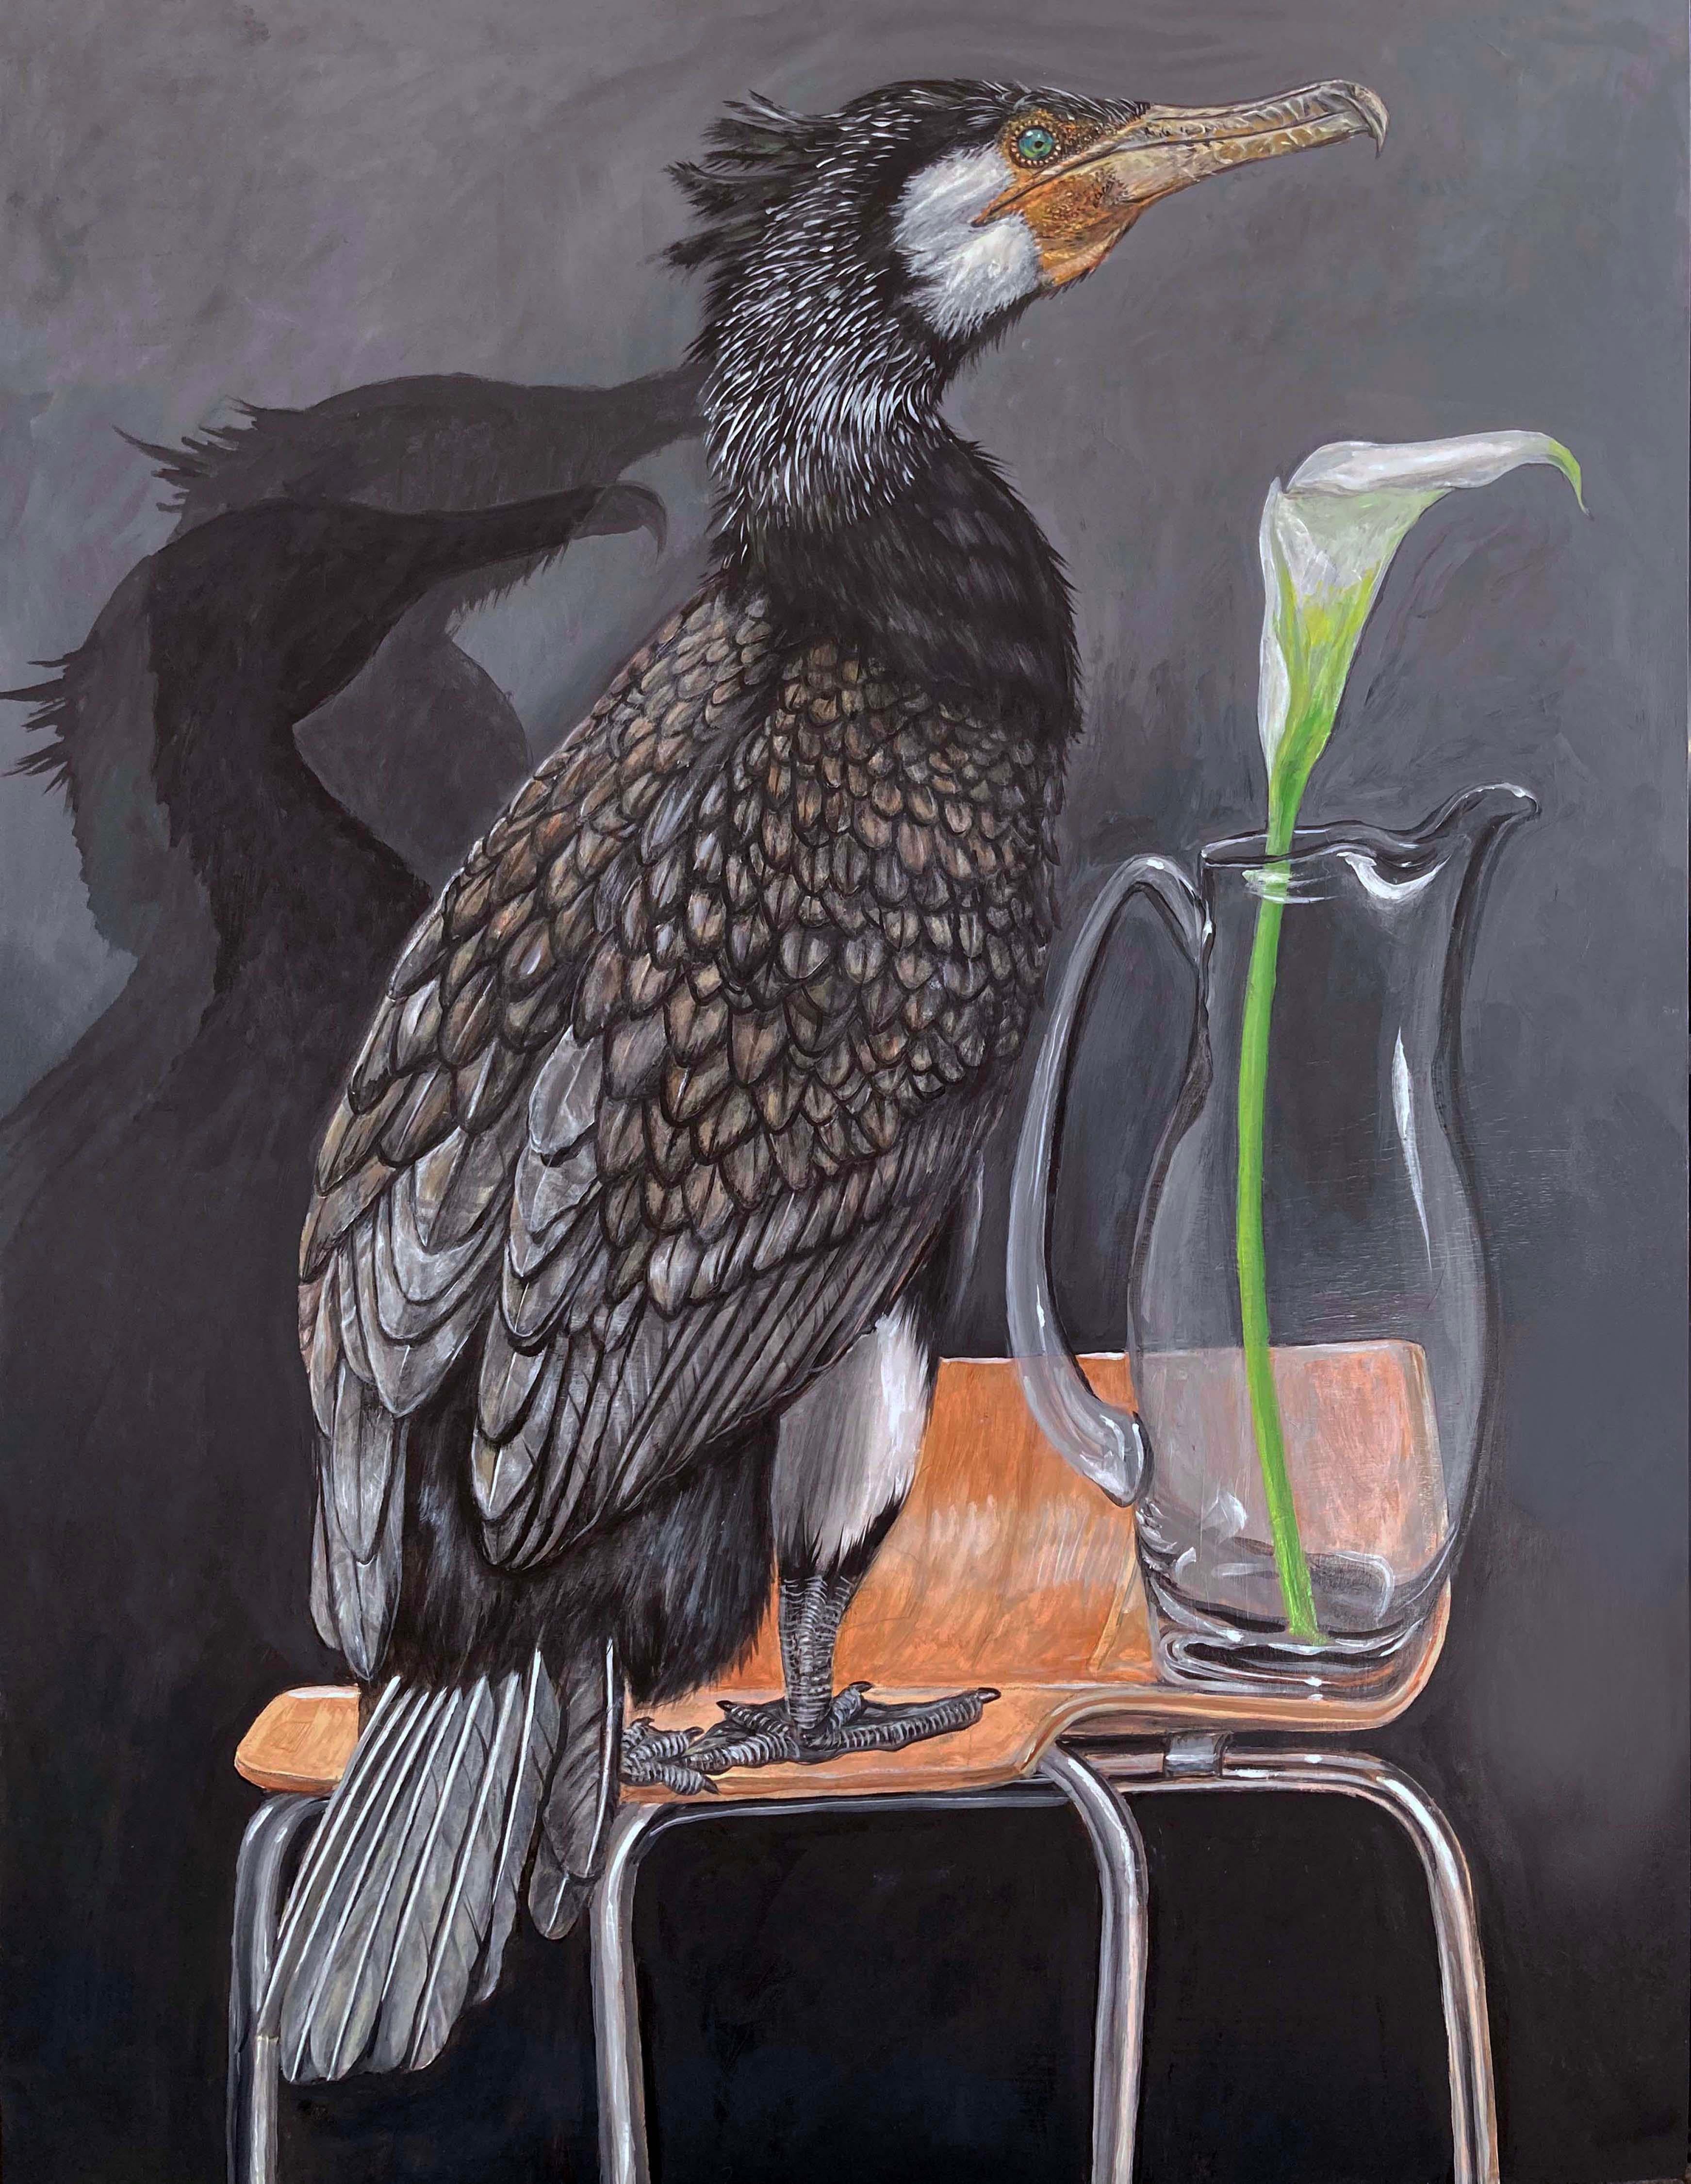 Thomas Broadbent Animal Painting – "Großer Kormoran auf Stuhl" zeitgenössische surrealistische Tier Ölgemälde, Vogel lil